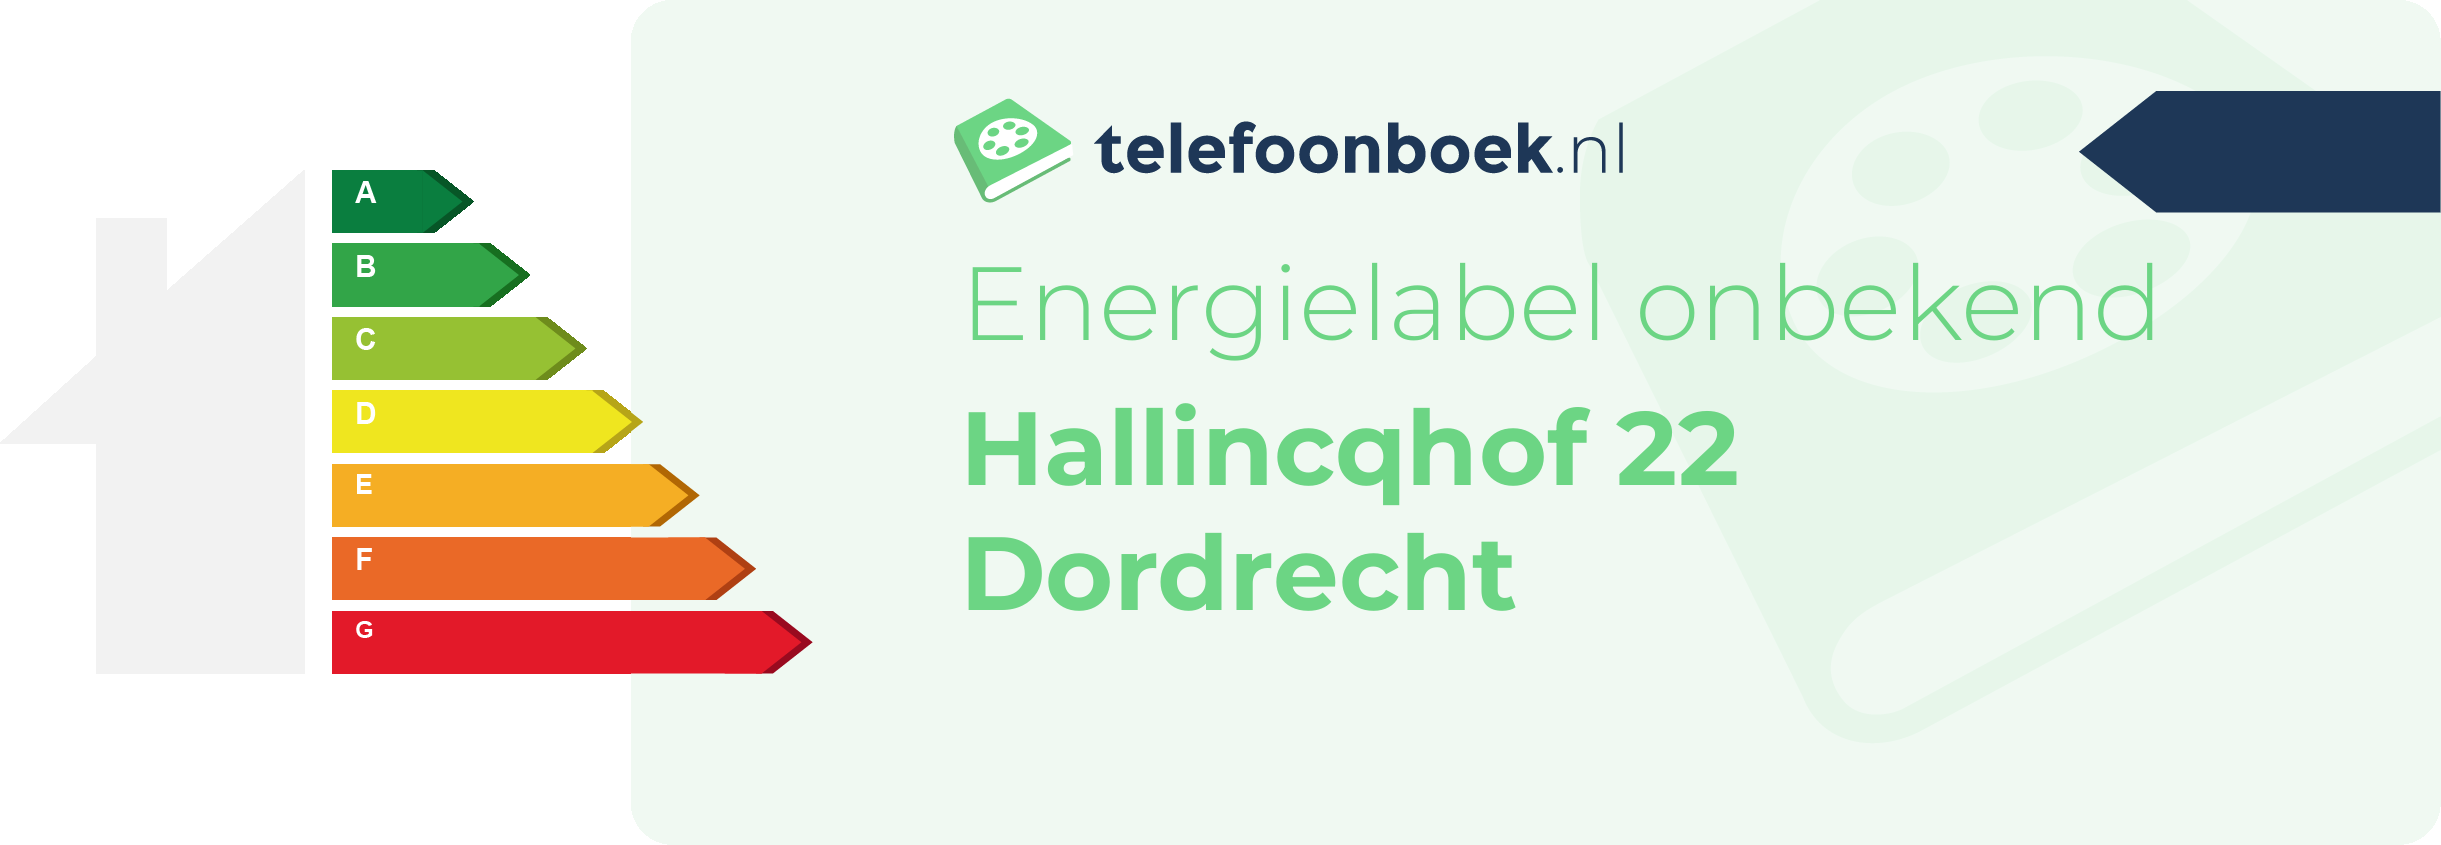 Energielabel Hallincqhof 22 Dordrecht